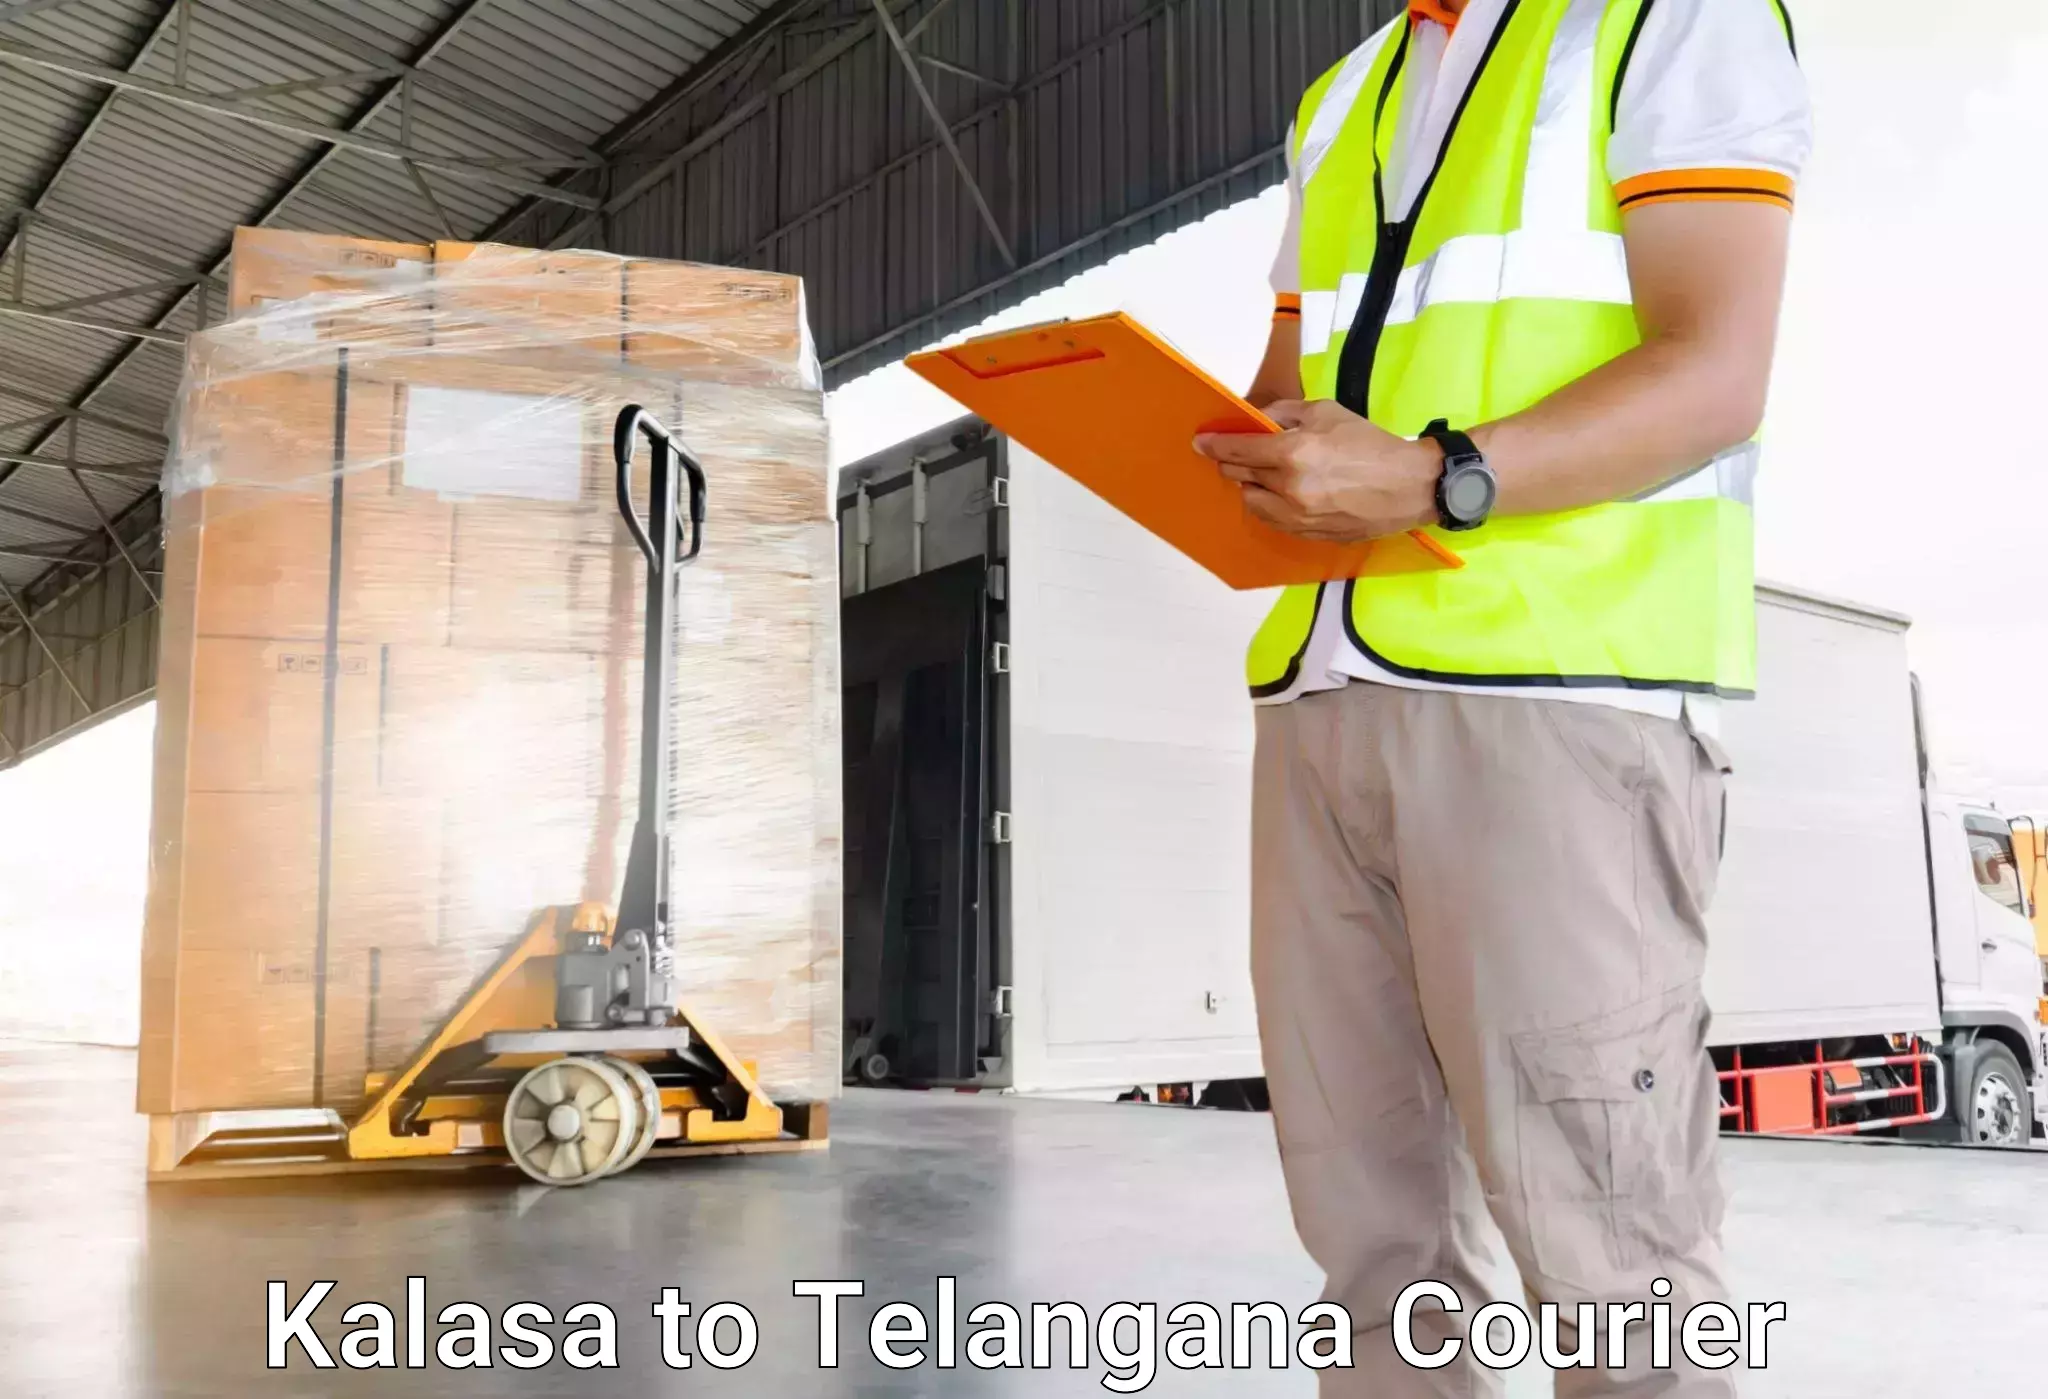 Luggage transport service Kalasa to Yellandu